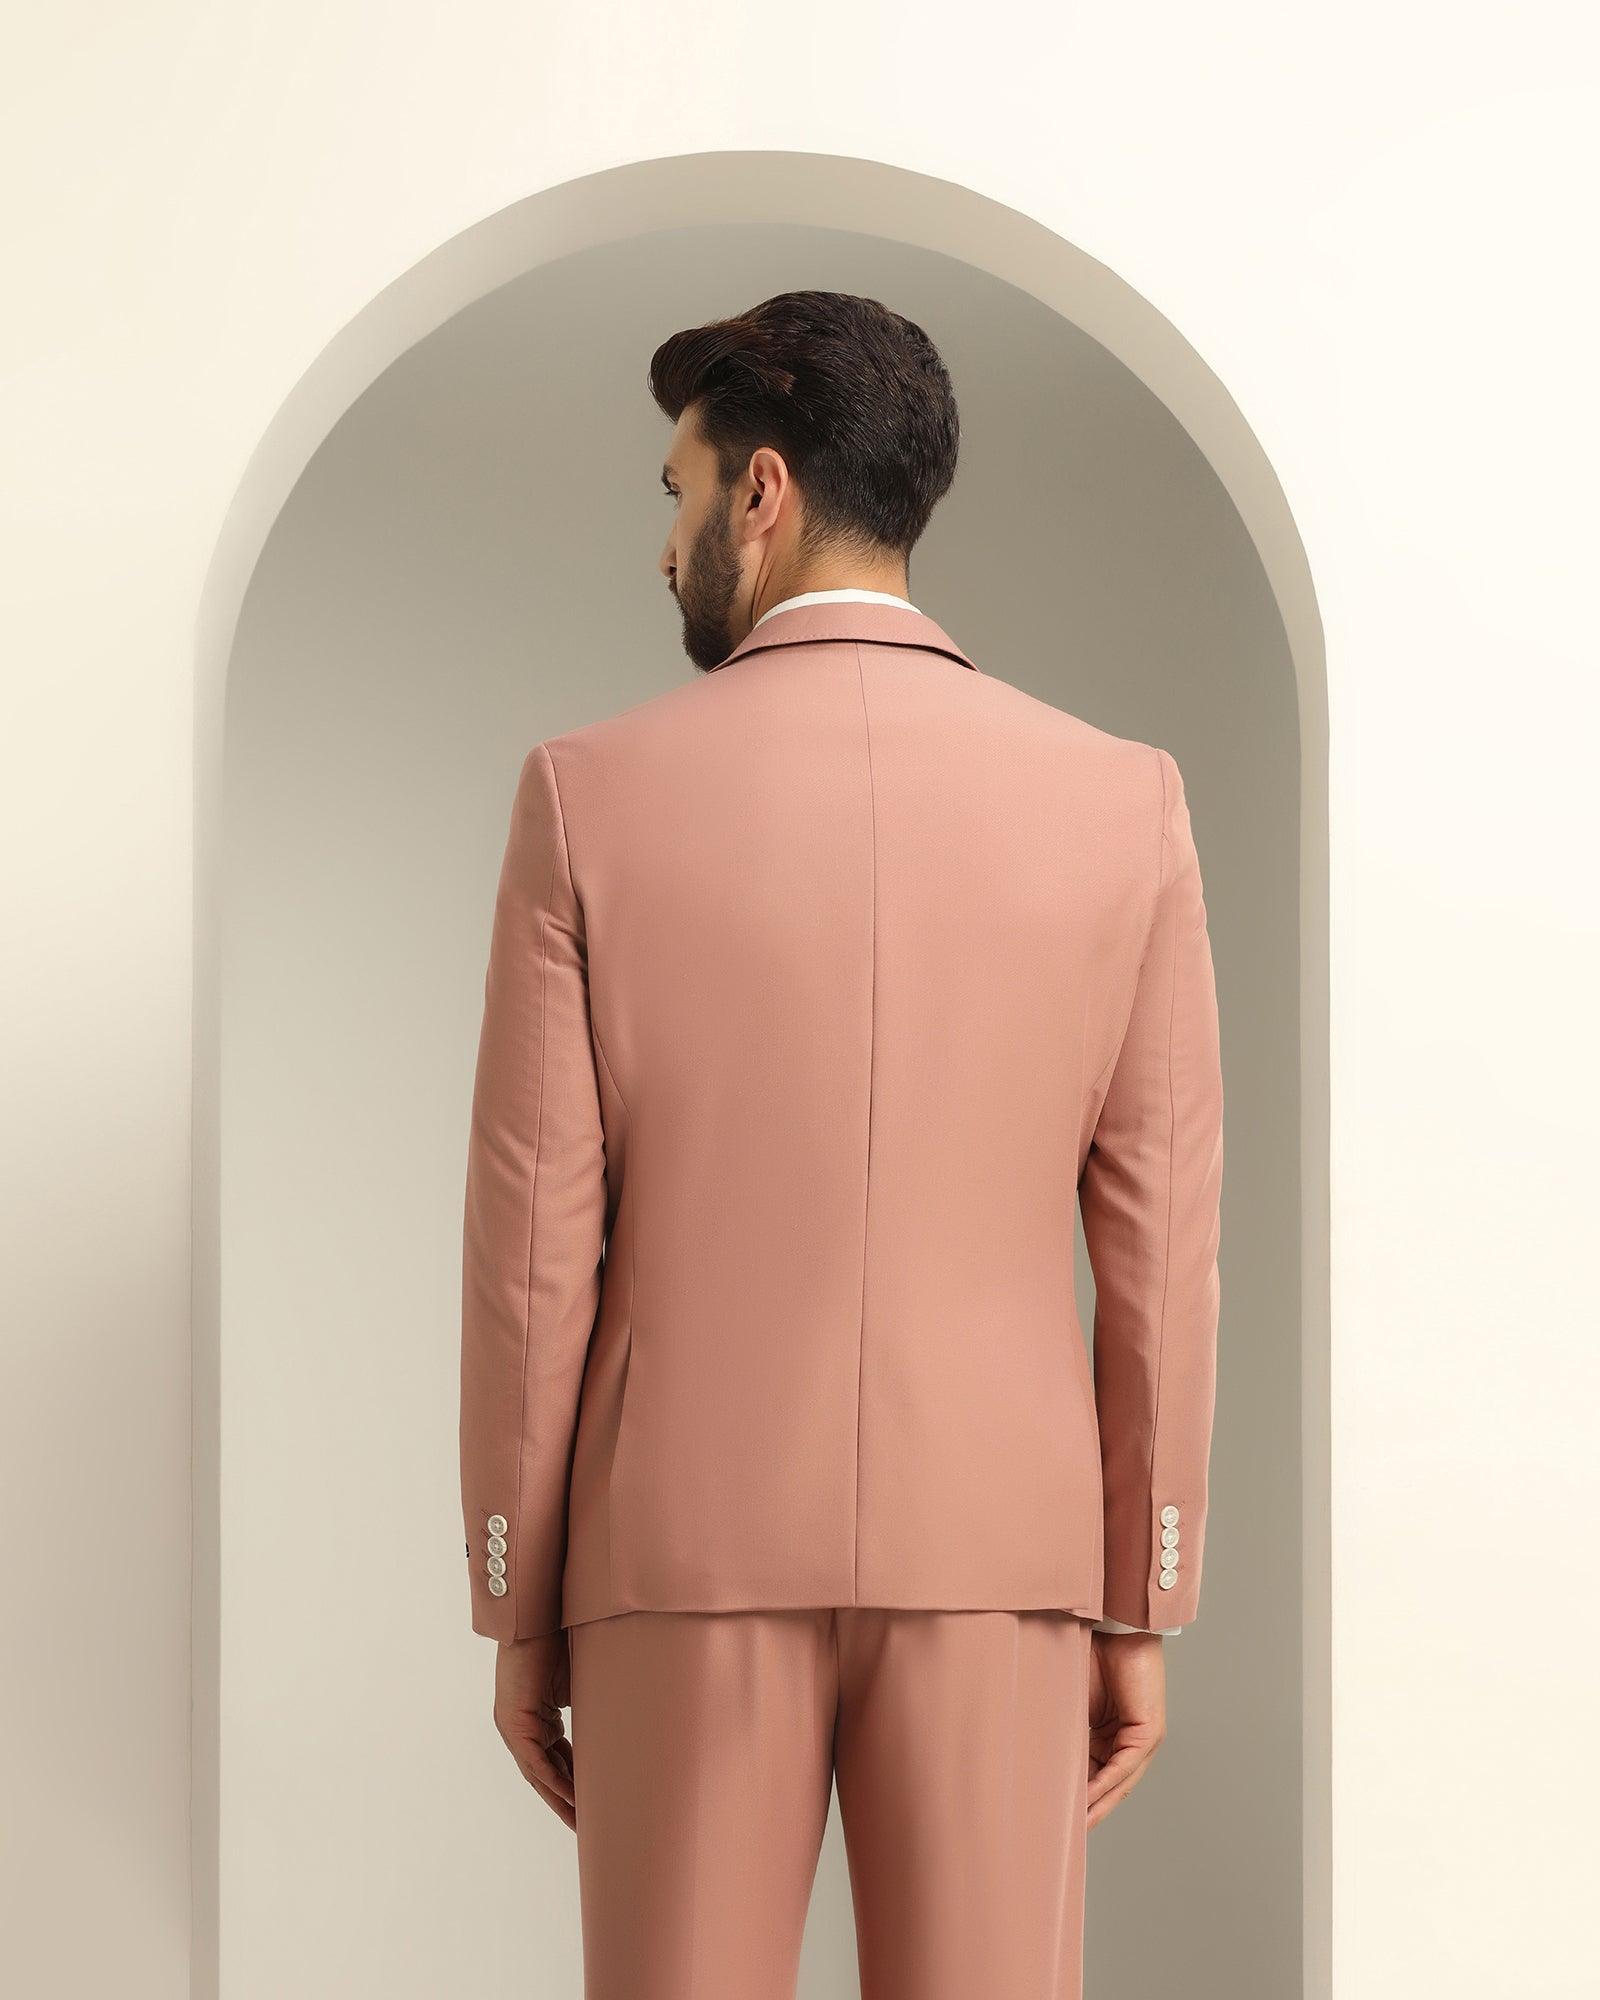 Three Piece Pink Textured Formal Suit - Daylit